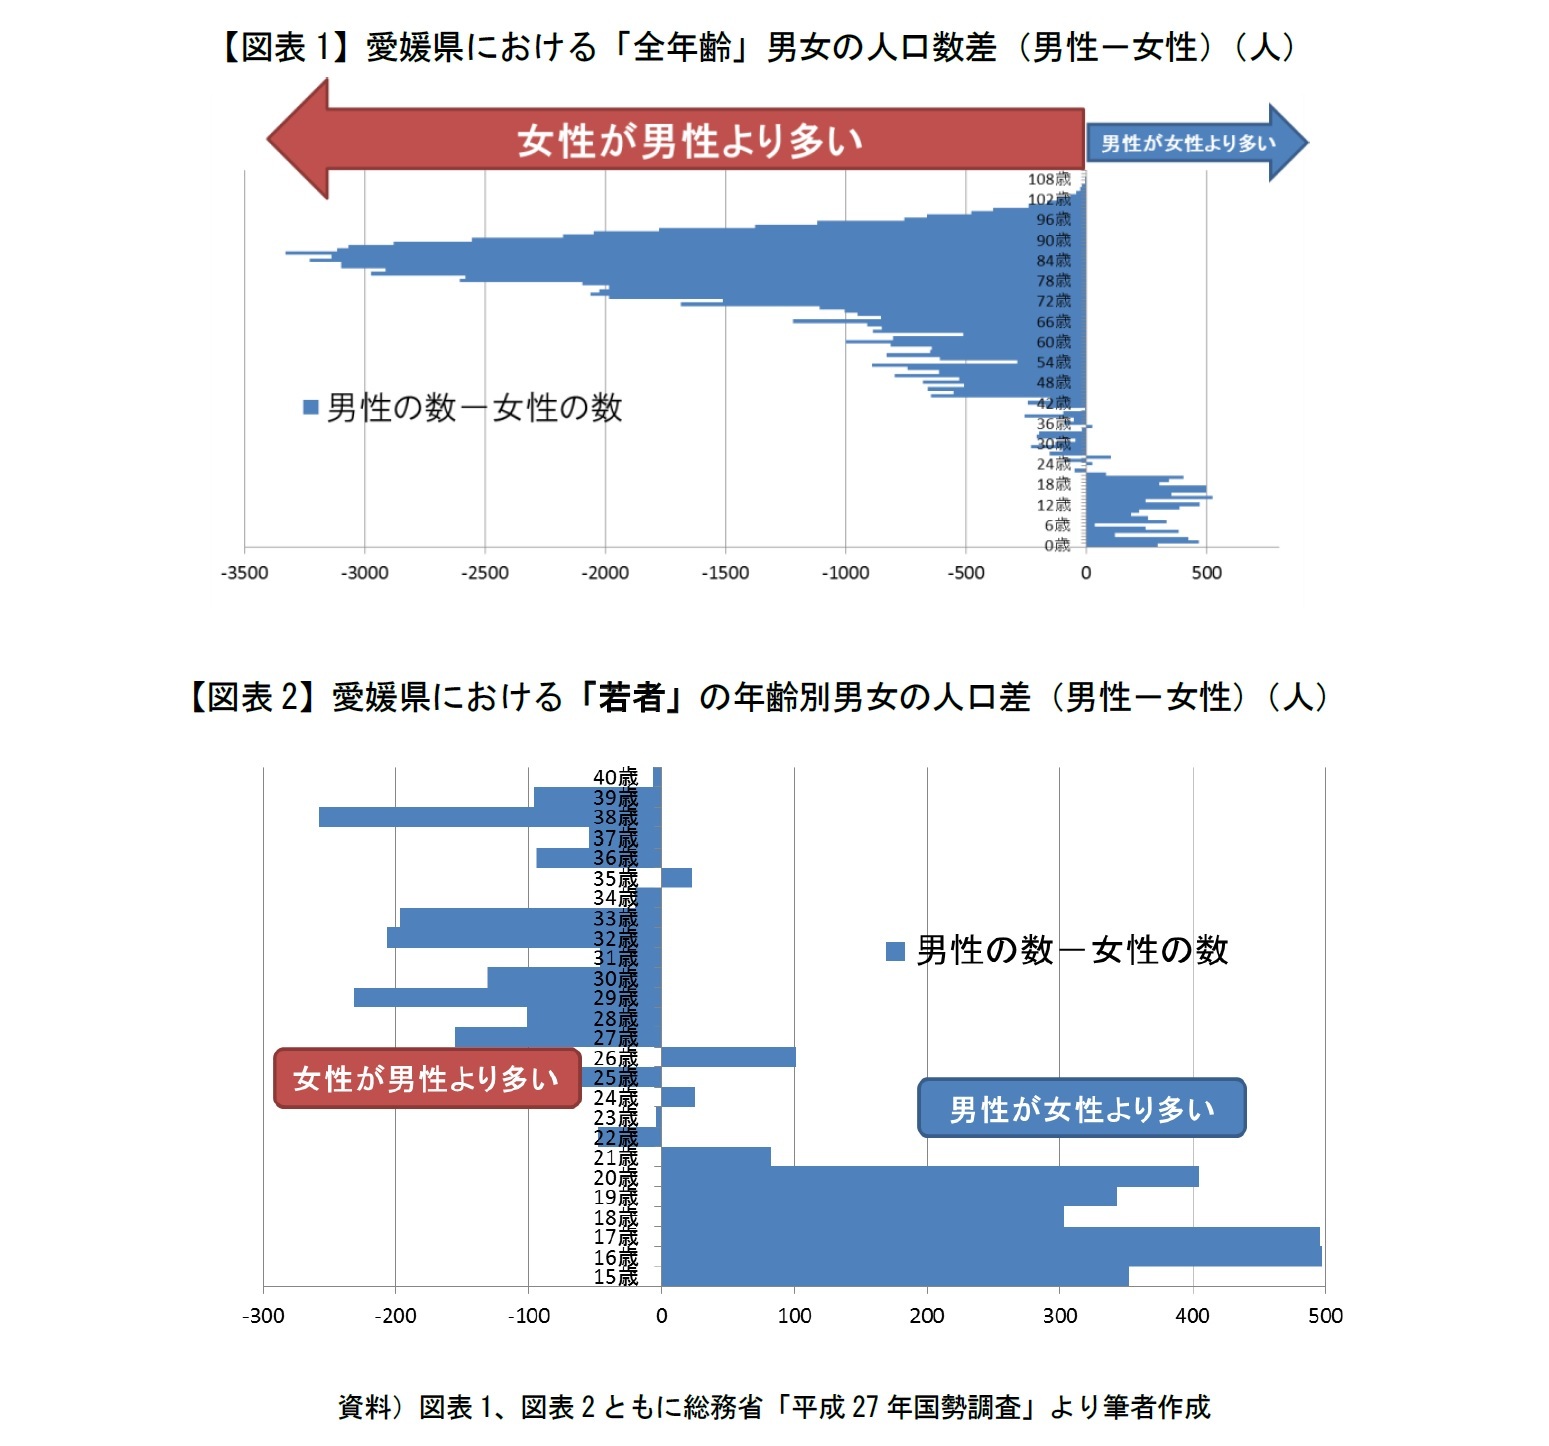 【図表1】愛媛県における「全年齢」男女の人口数差（男性－女性）（人）/【図表2】愛媛県における「若者」の年齢別男女の人口差（男性－女性）（人）